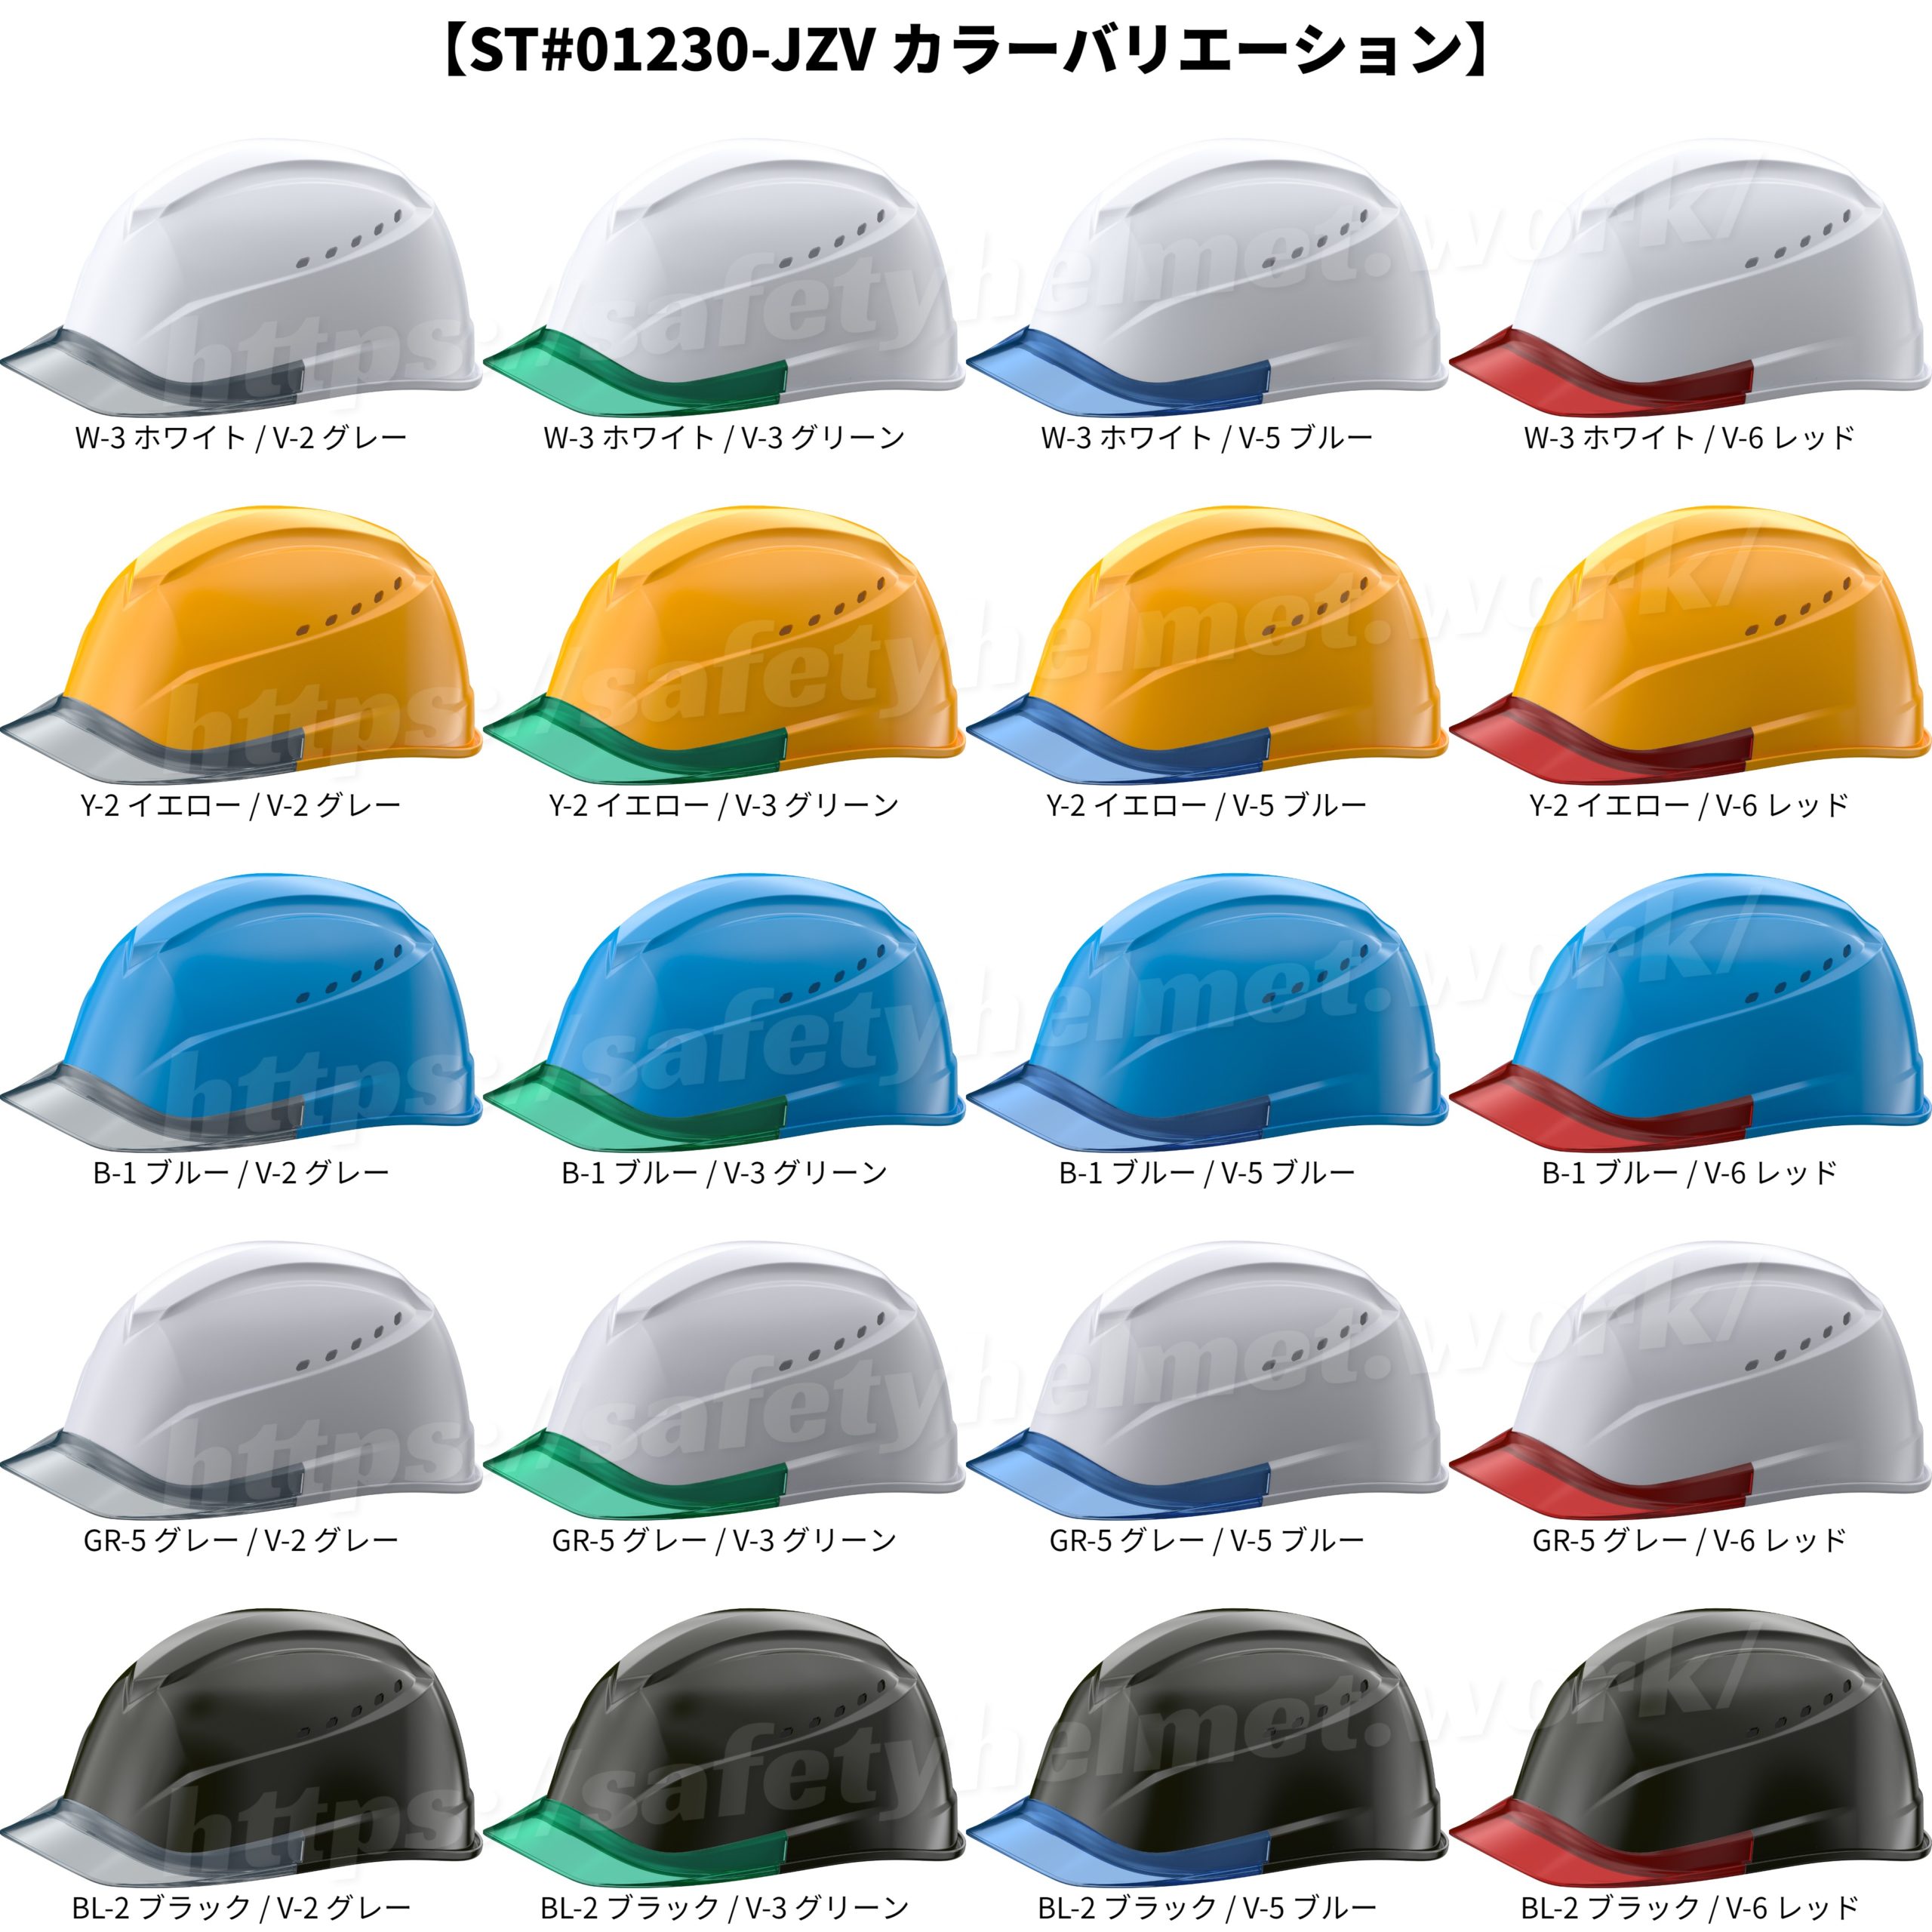 tanizawa-helmet-airlight-st01230jzv-color-variation